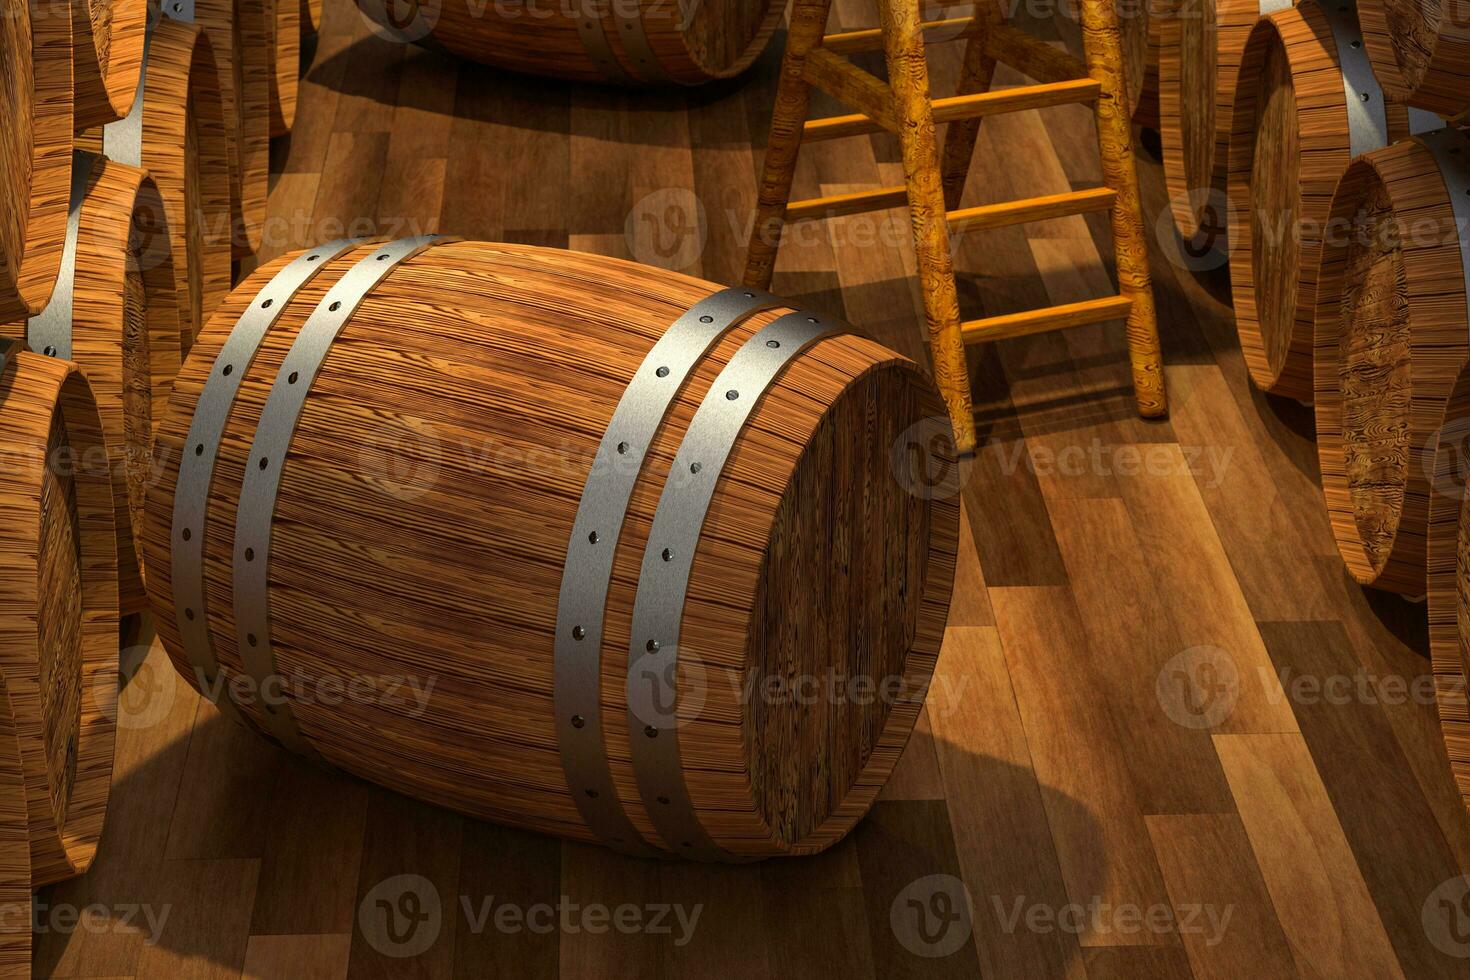 houten kelder met vaten binnen, wijnoogst drank magazijn, 3d weergave. foto